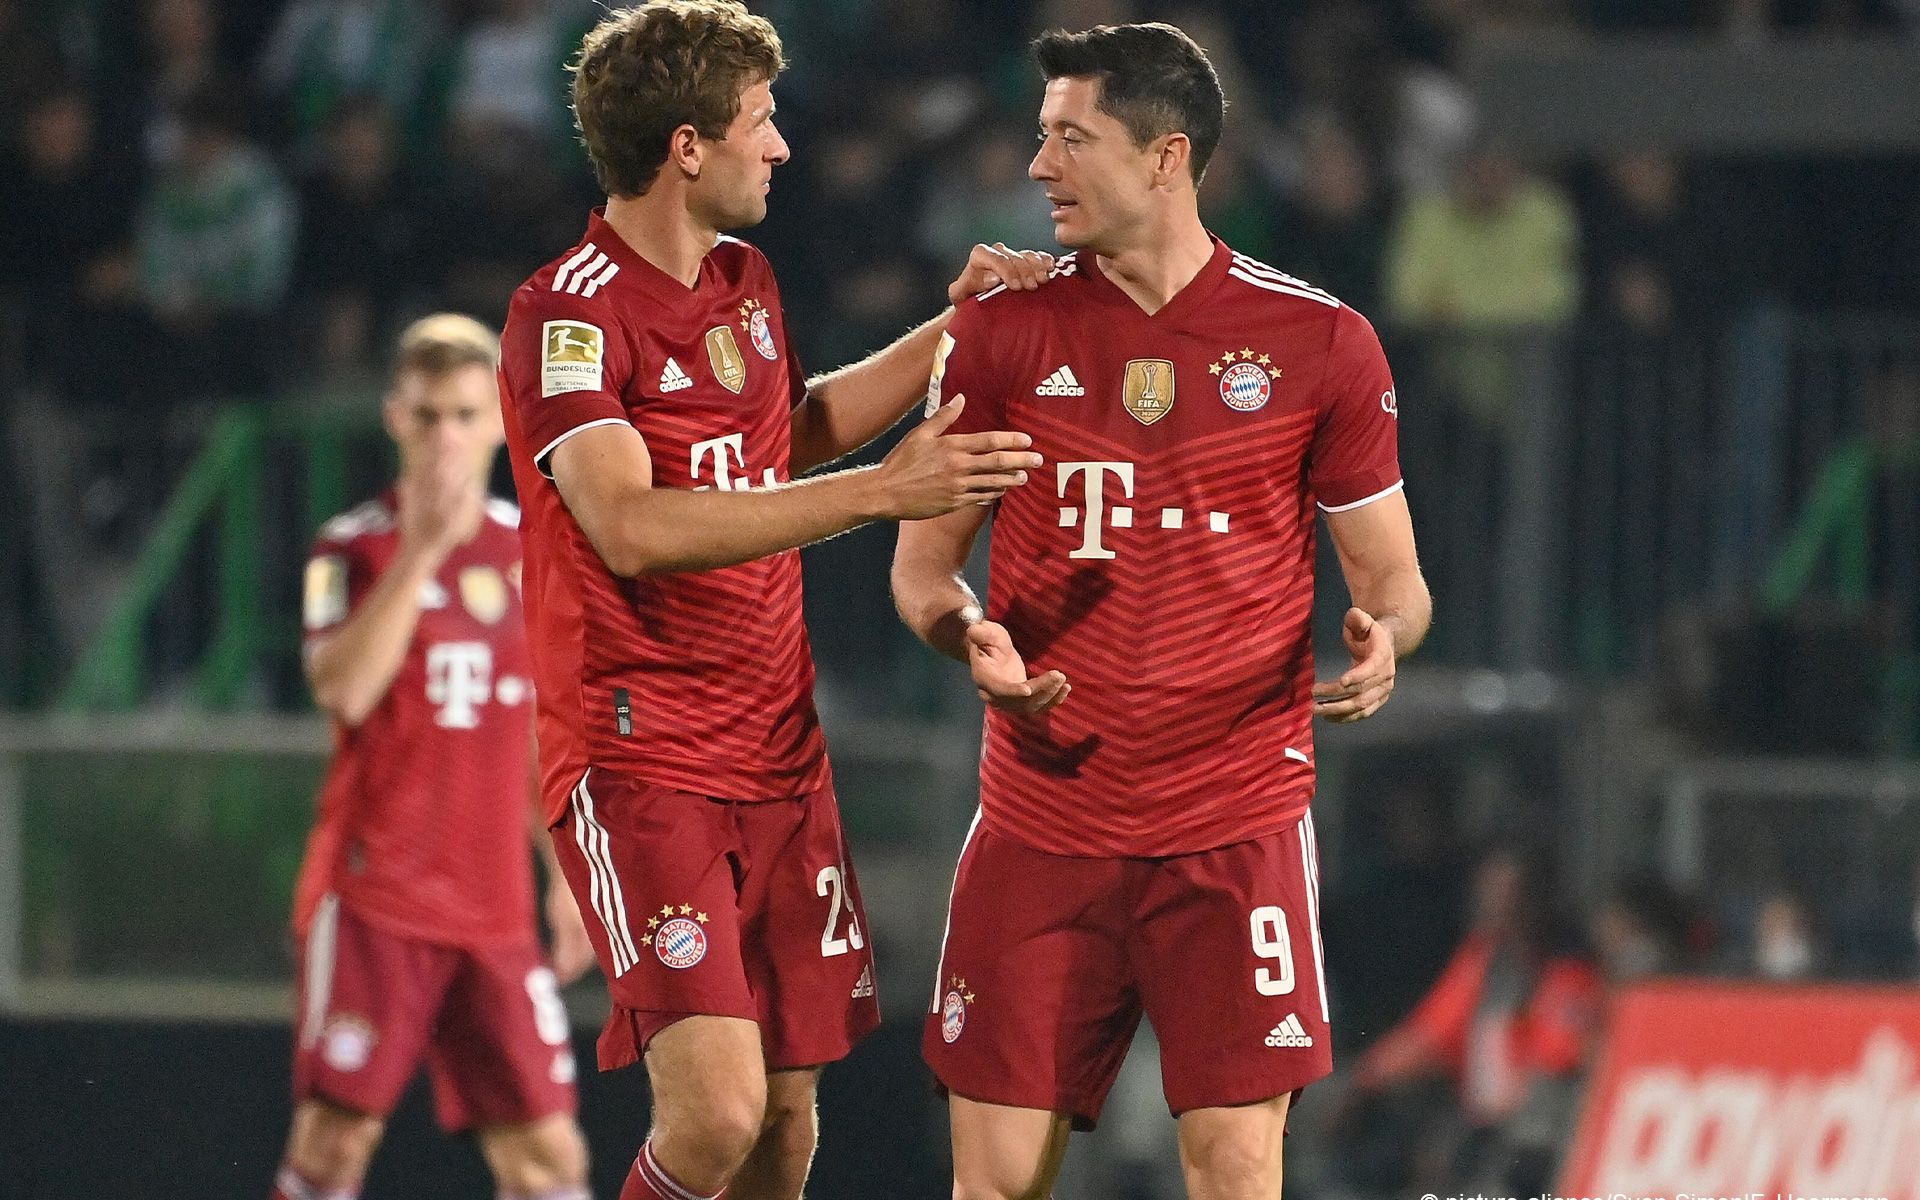 Bayern Munich độc chiếm ngôi đầu Bundesliga dù chơi thiếu người